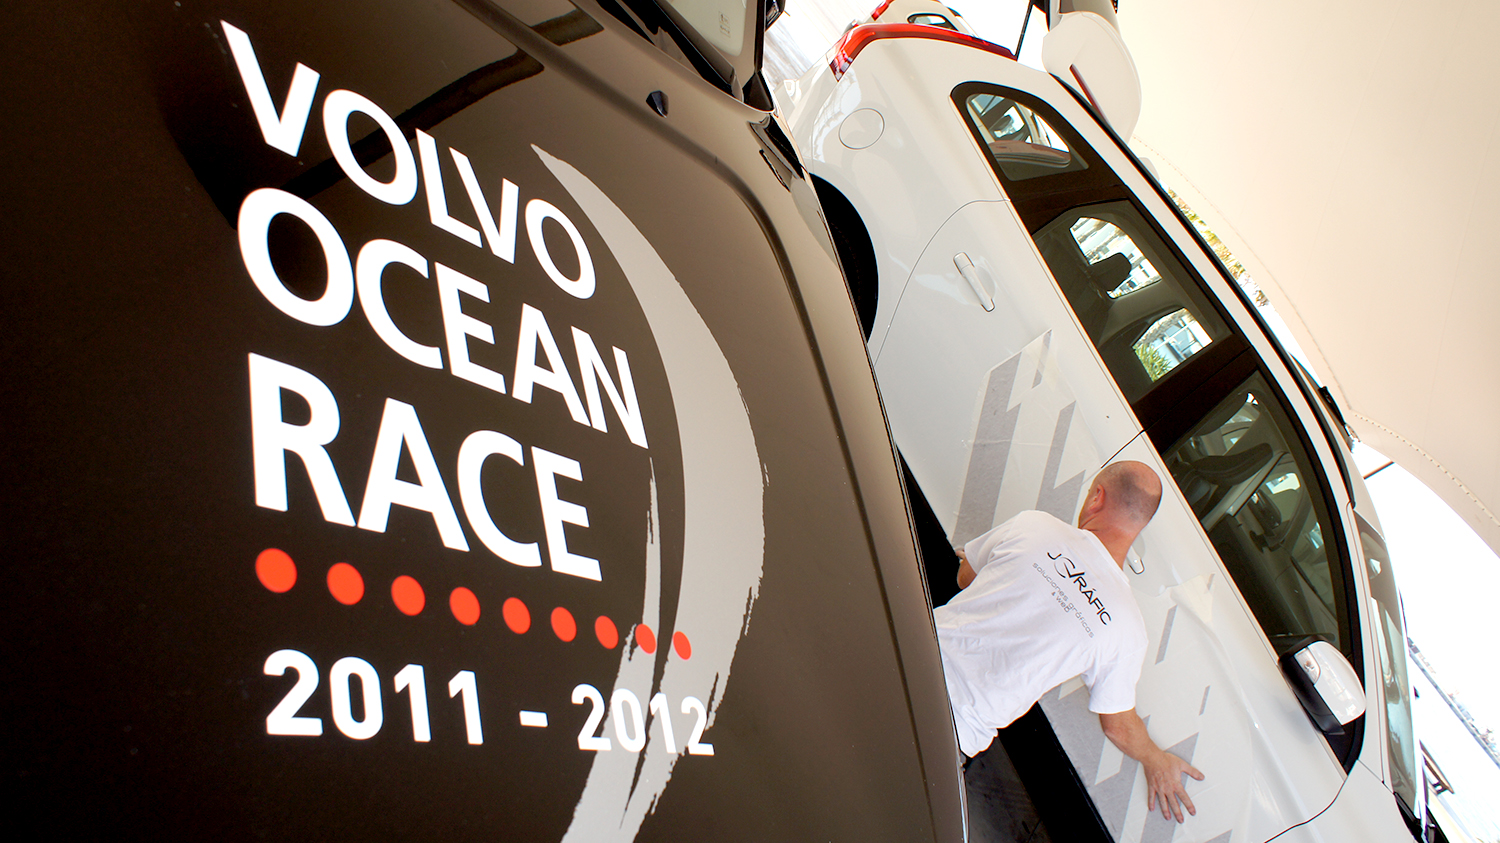 Rotulación de vehículos. Volvo Ocean Race.